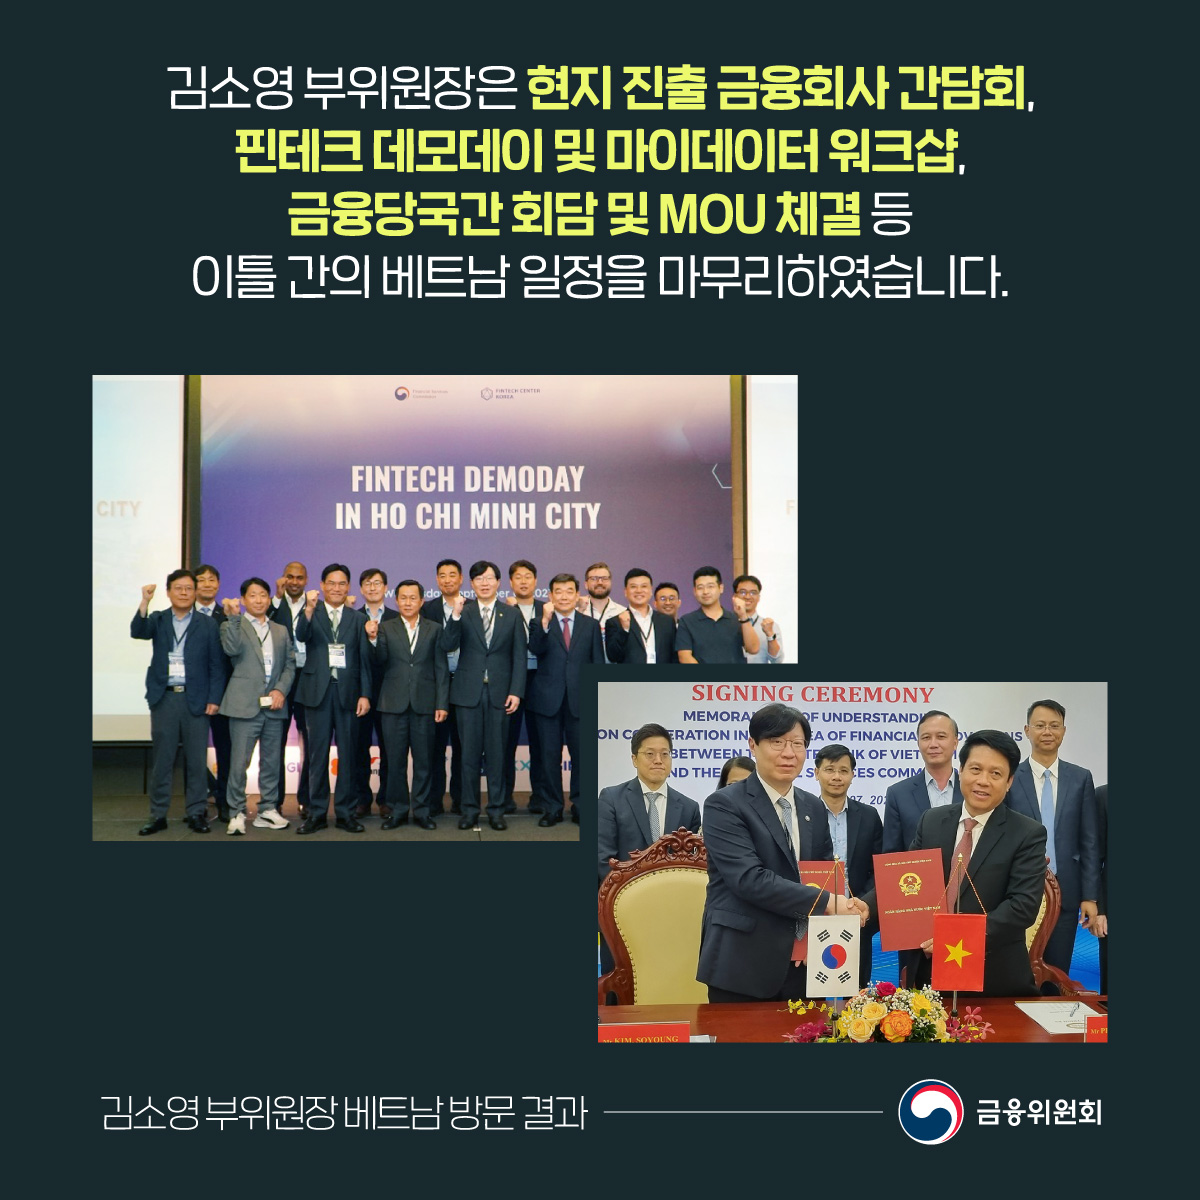 김소영 부위원장은 현지 진출 금융회사 간담회, 핀테크 데모데이 및 마이데이터 워크샵, 금융당국간 회담 및 MOU 체결 등 이틀 간의 베트남 일정을 마무리하였습니다.  ​